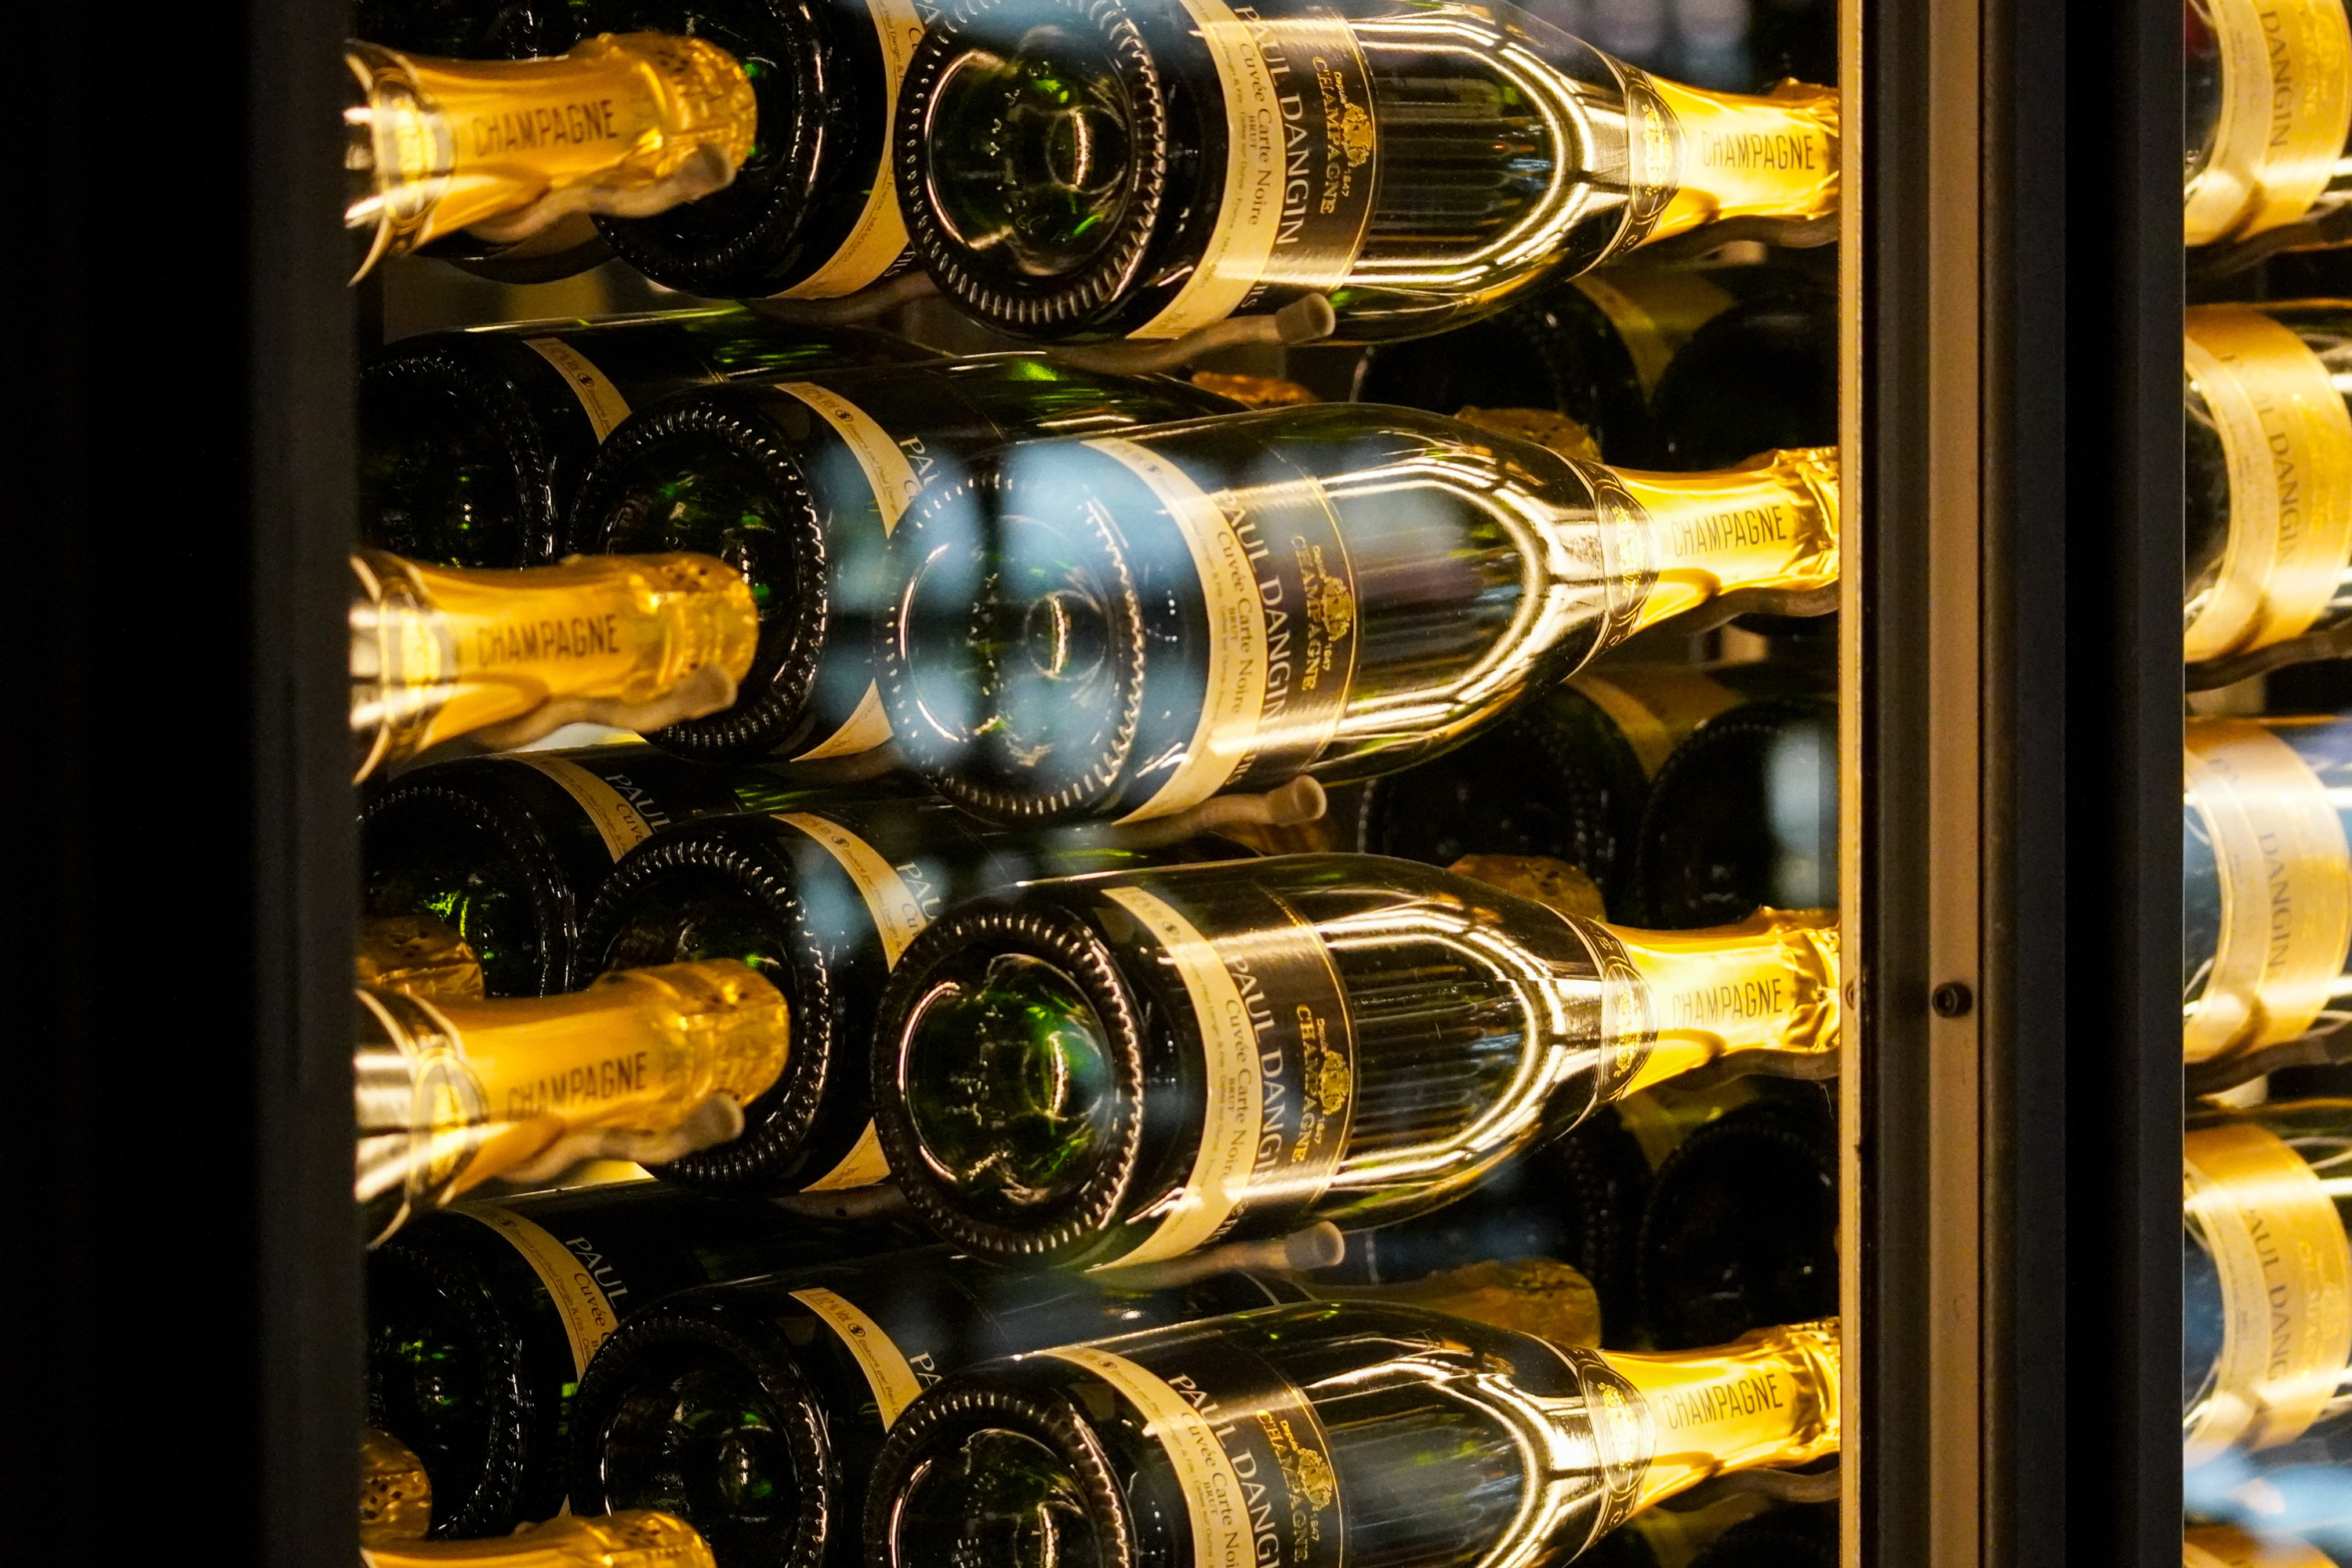 Ein ordentlicher Weinkühlschrank ist grade bei gehobenen Anlässen goldwert - auf der Wiese sieht man sie allerdings eher selten.